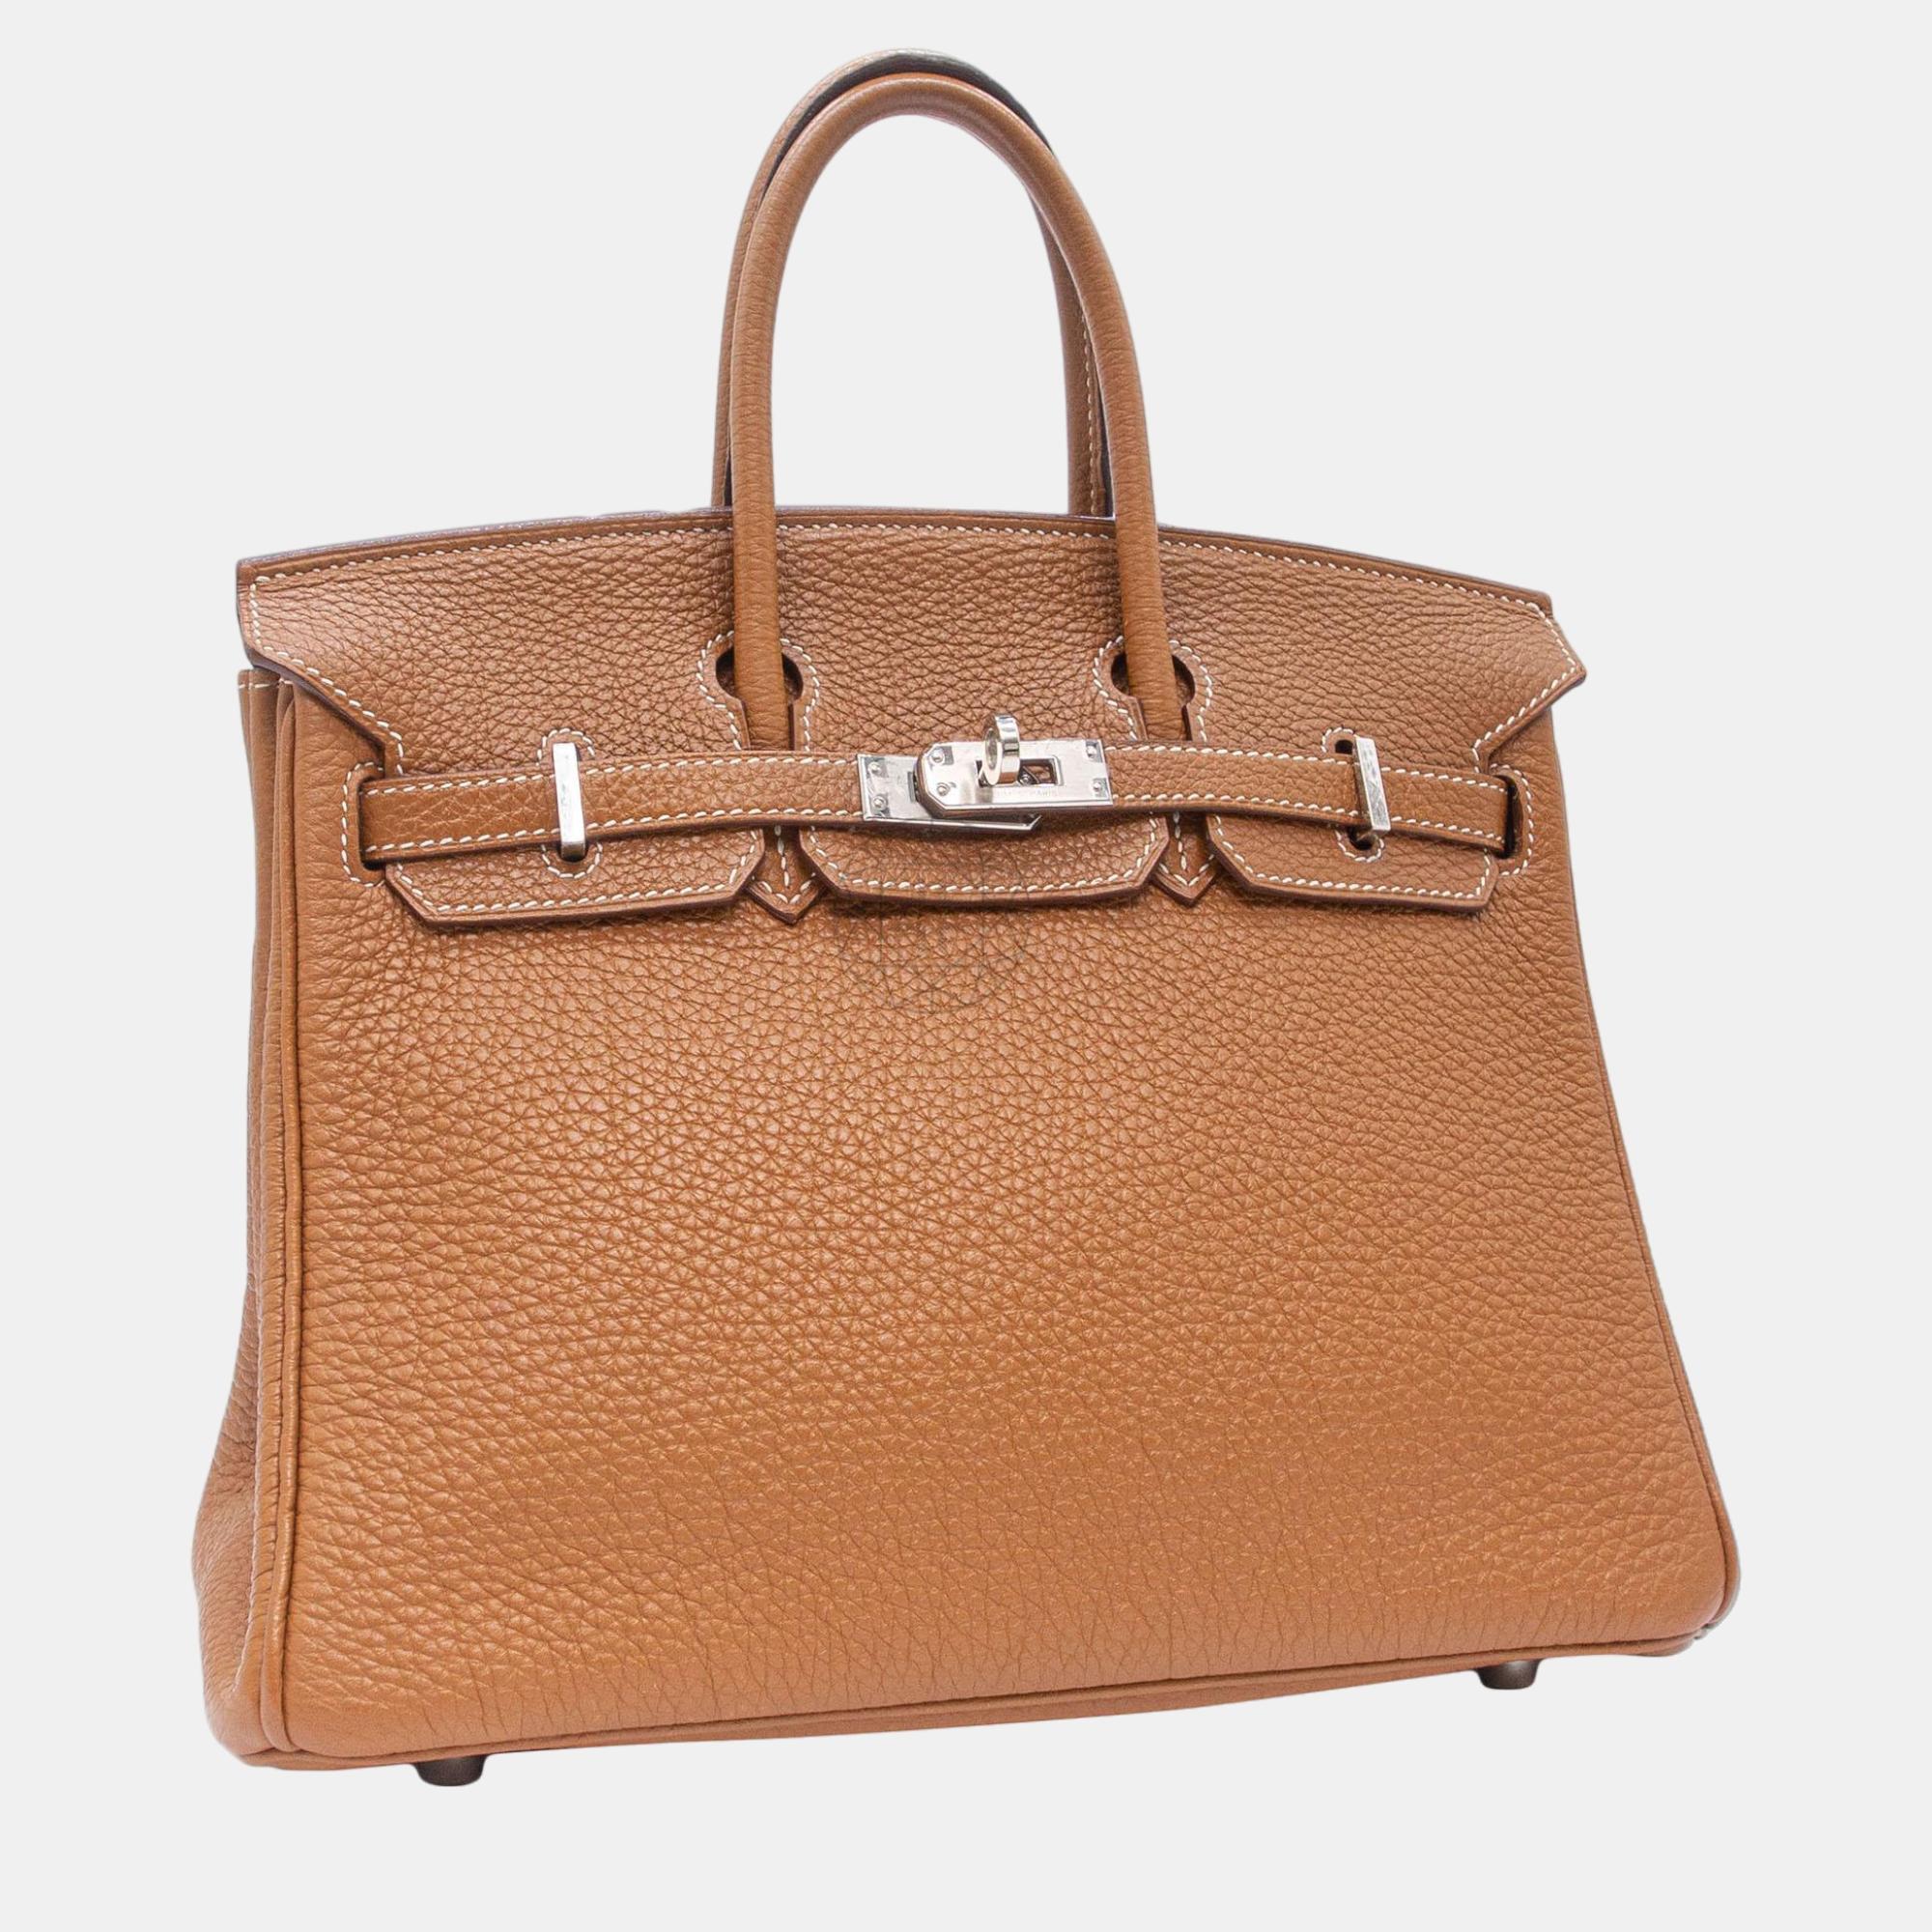 Hermès Birkin 25 Gold Togo With PHW Bag